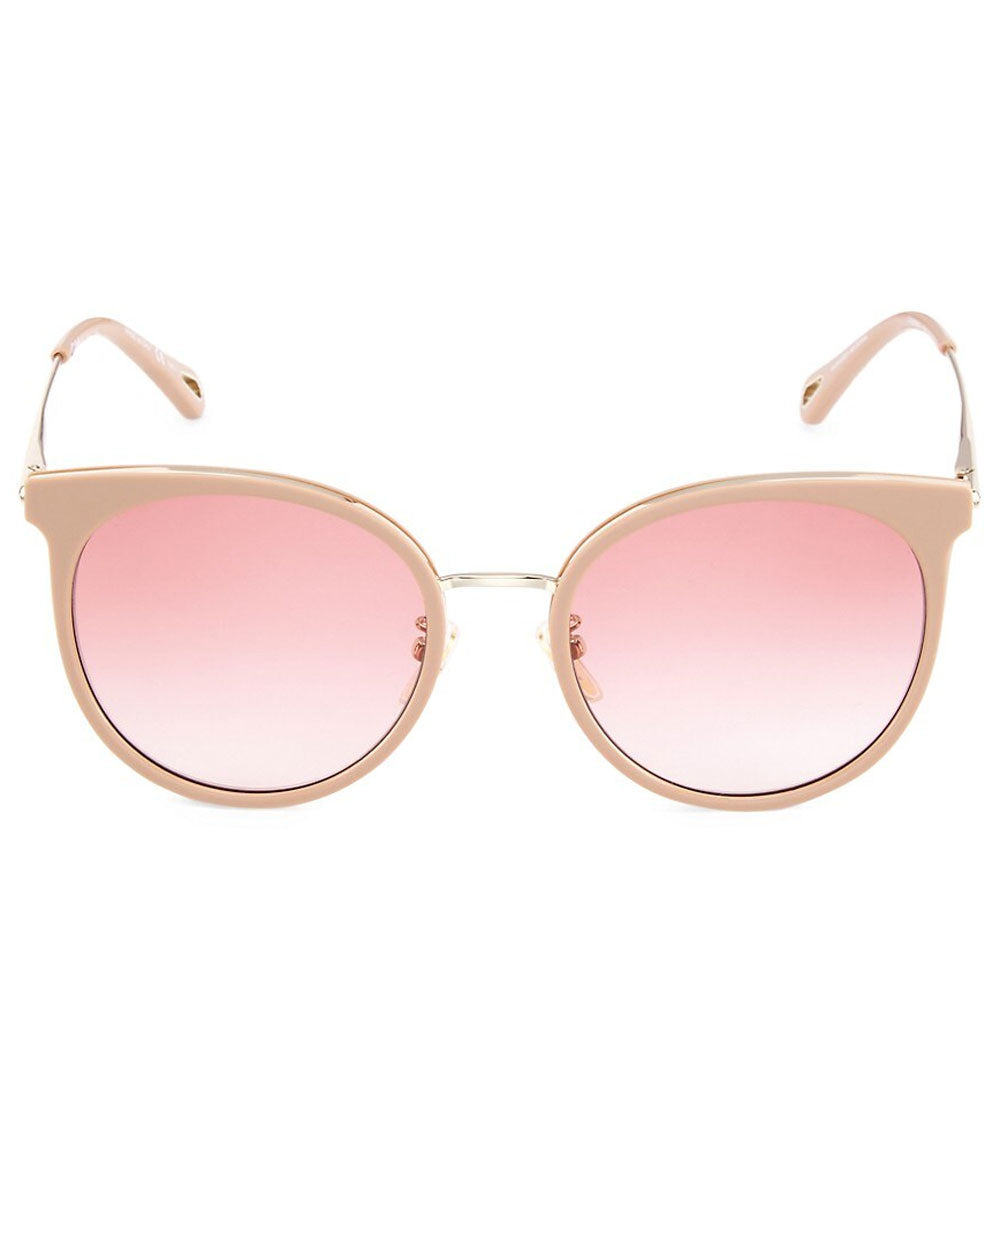 Quelia Sunglasses in Pink